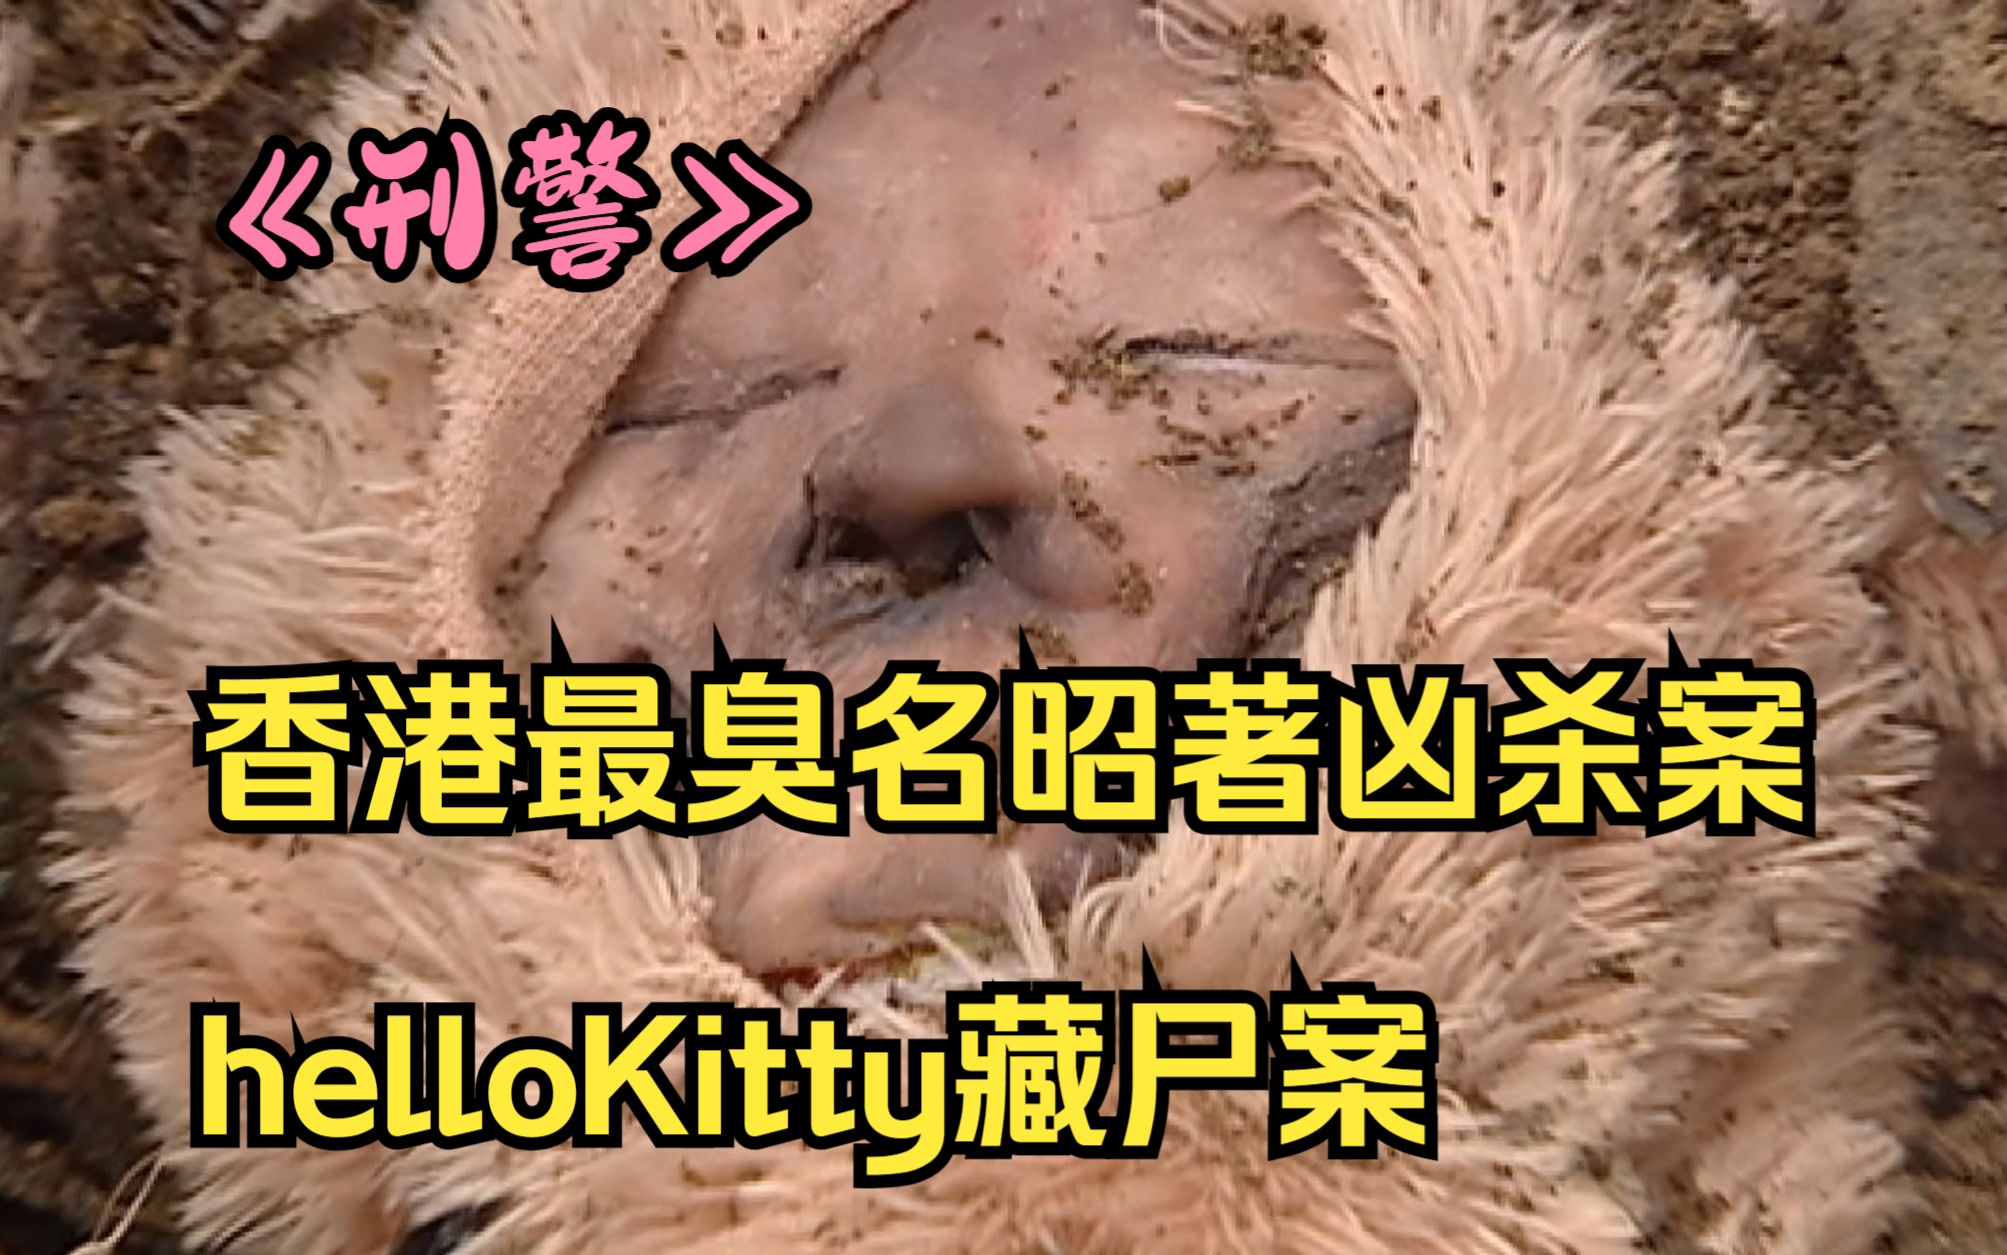 【hello kitty藏尸案】香港最臭名昭著的凶杀案,女孩头颅被一群禽兽藏